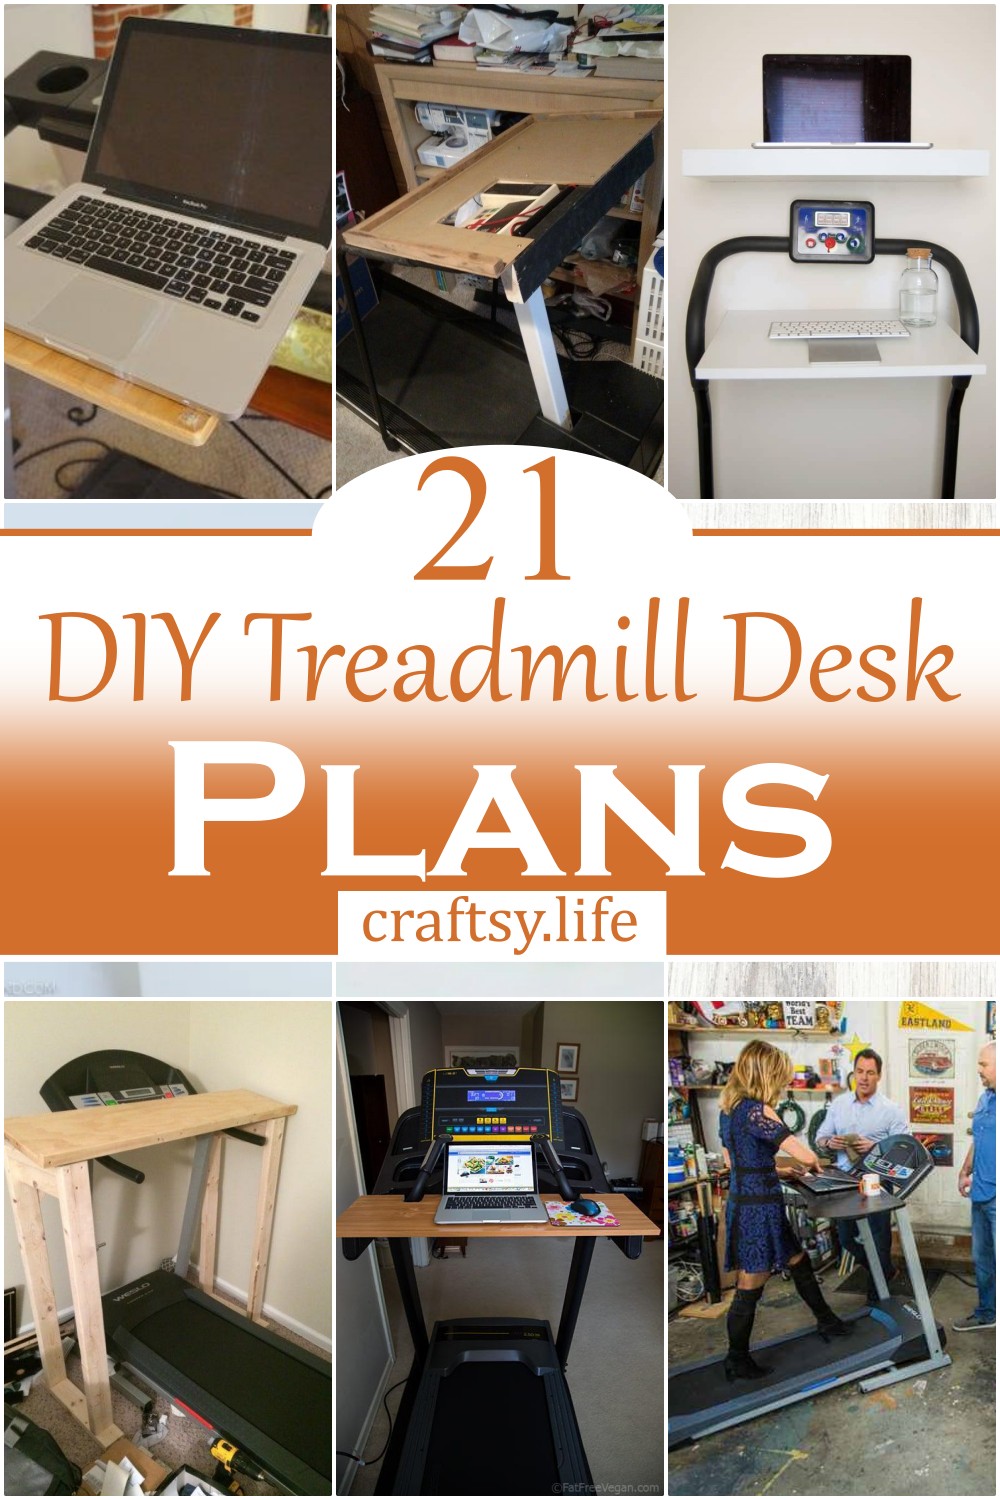 DIY Treadmill Desk Plans